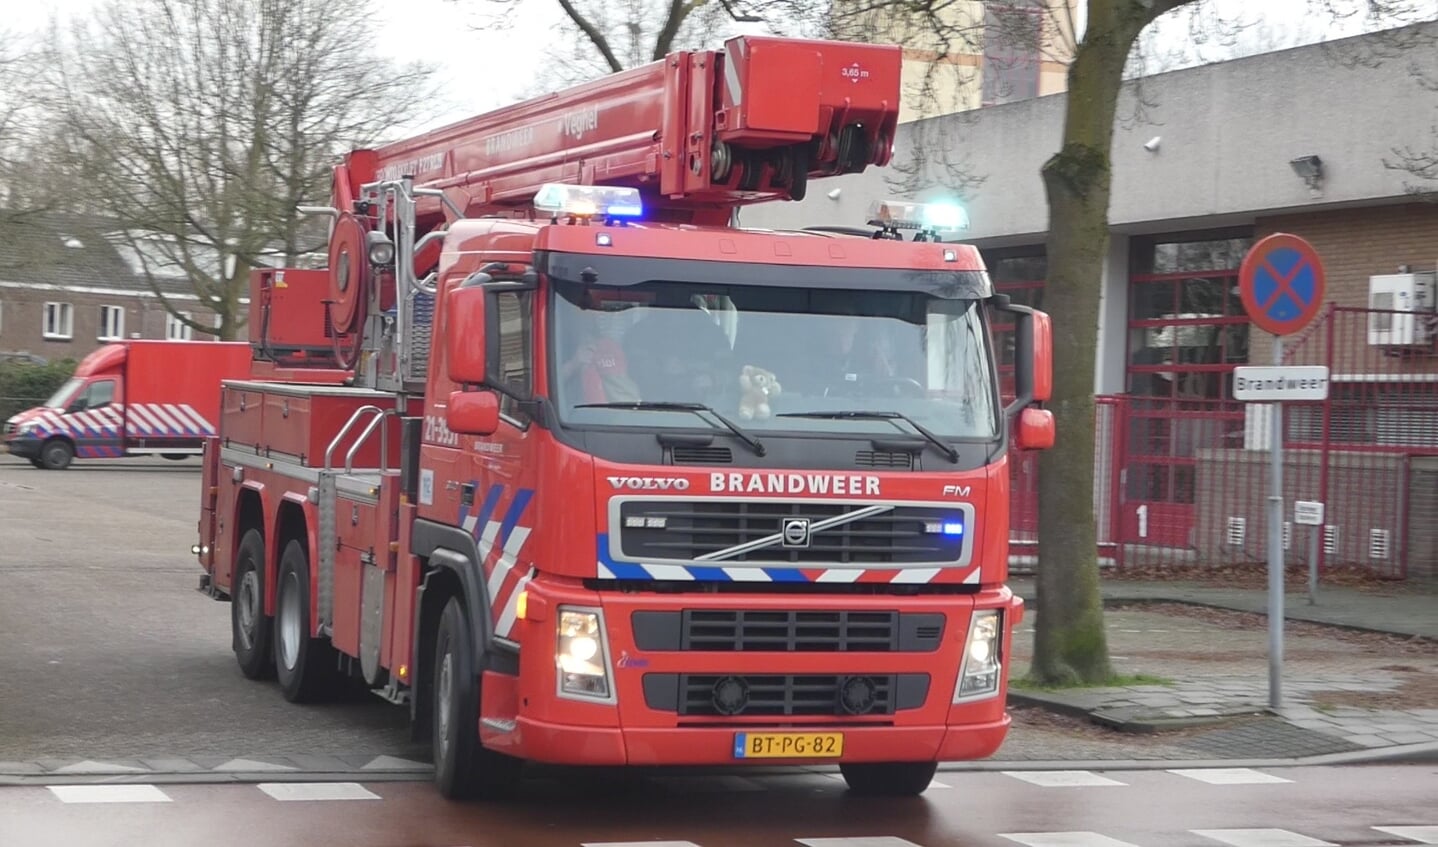 Brandweer in de Schadewijkstraat. (Foto: Thomas)